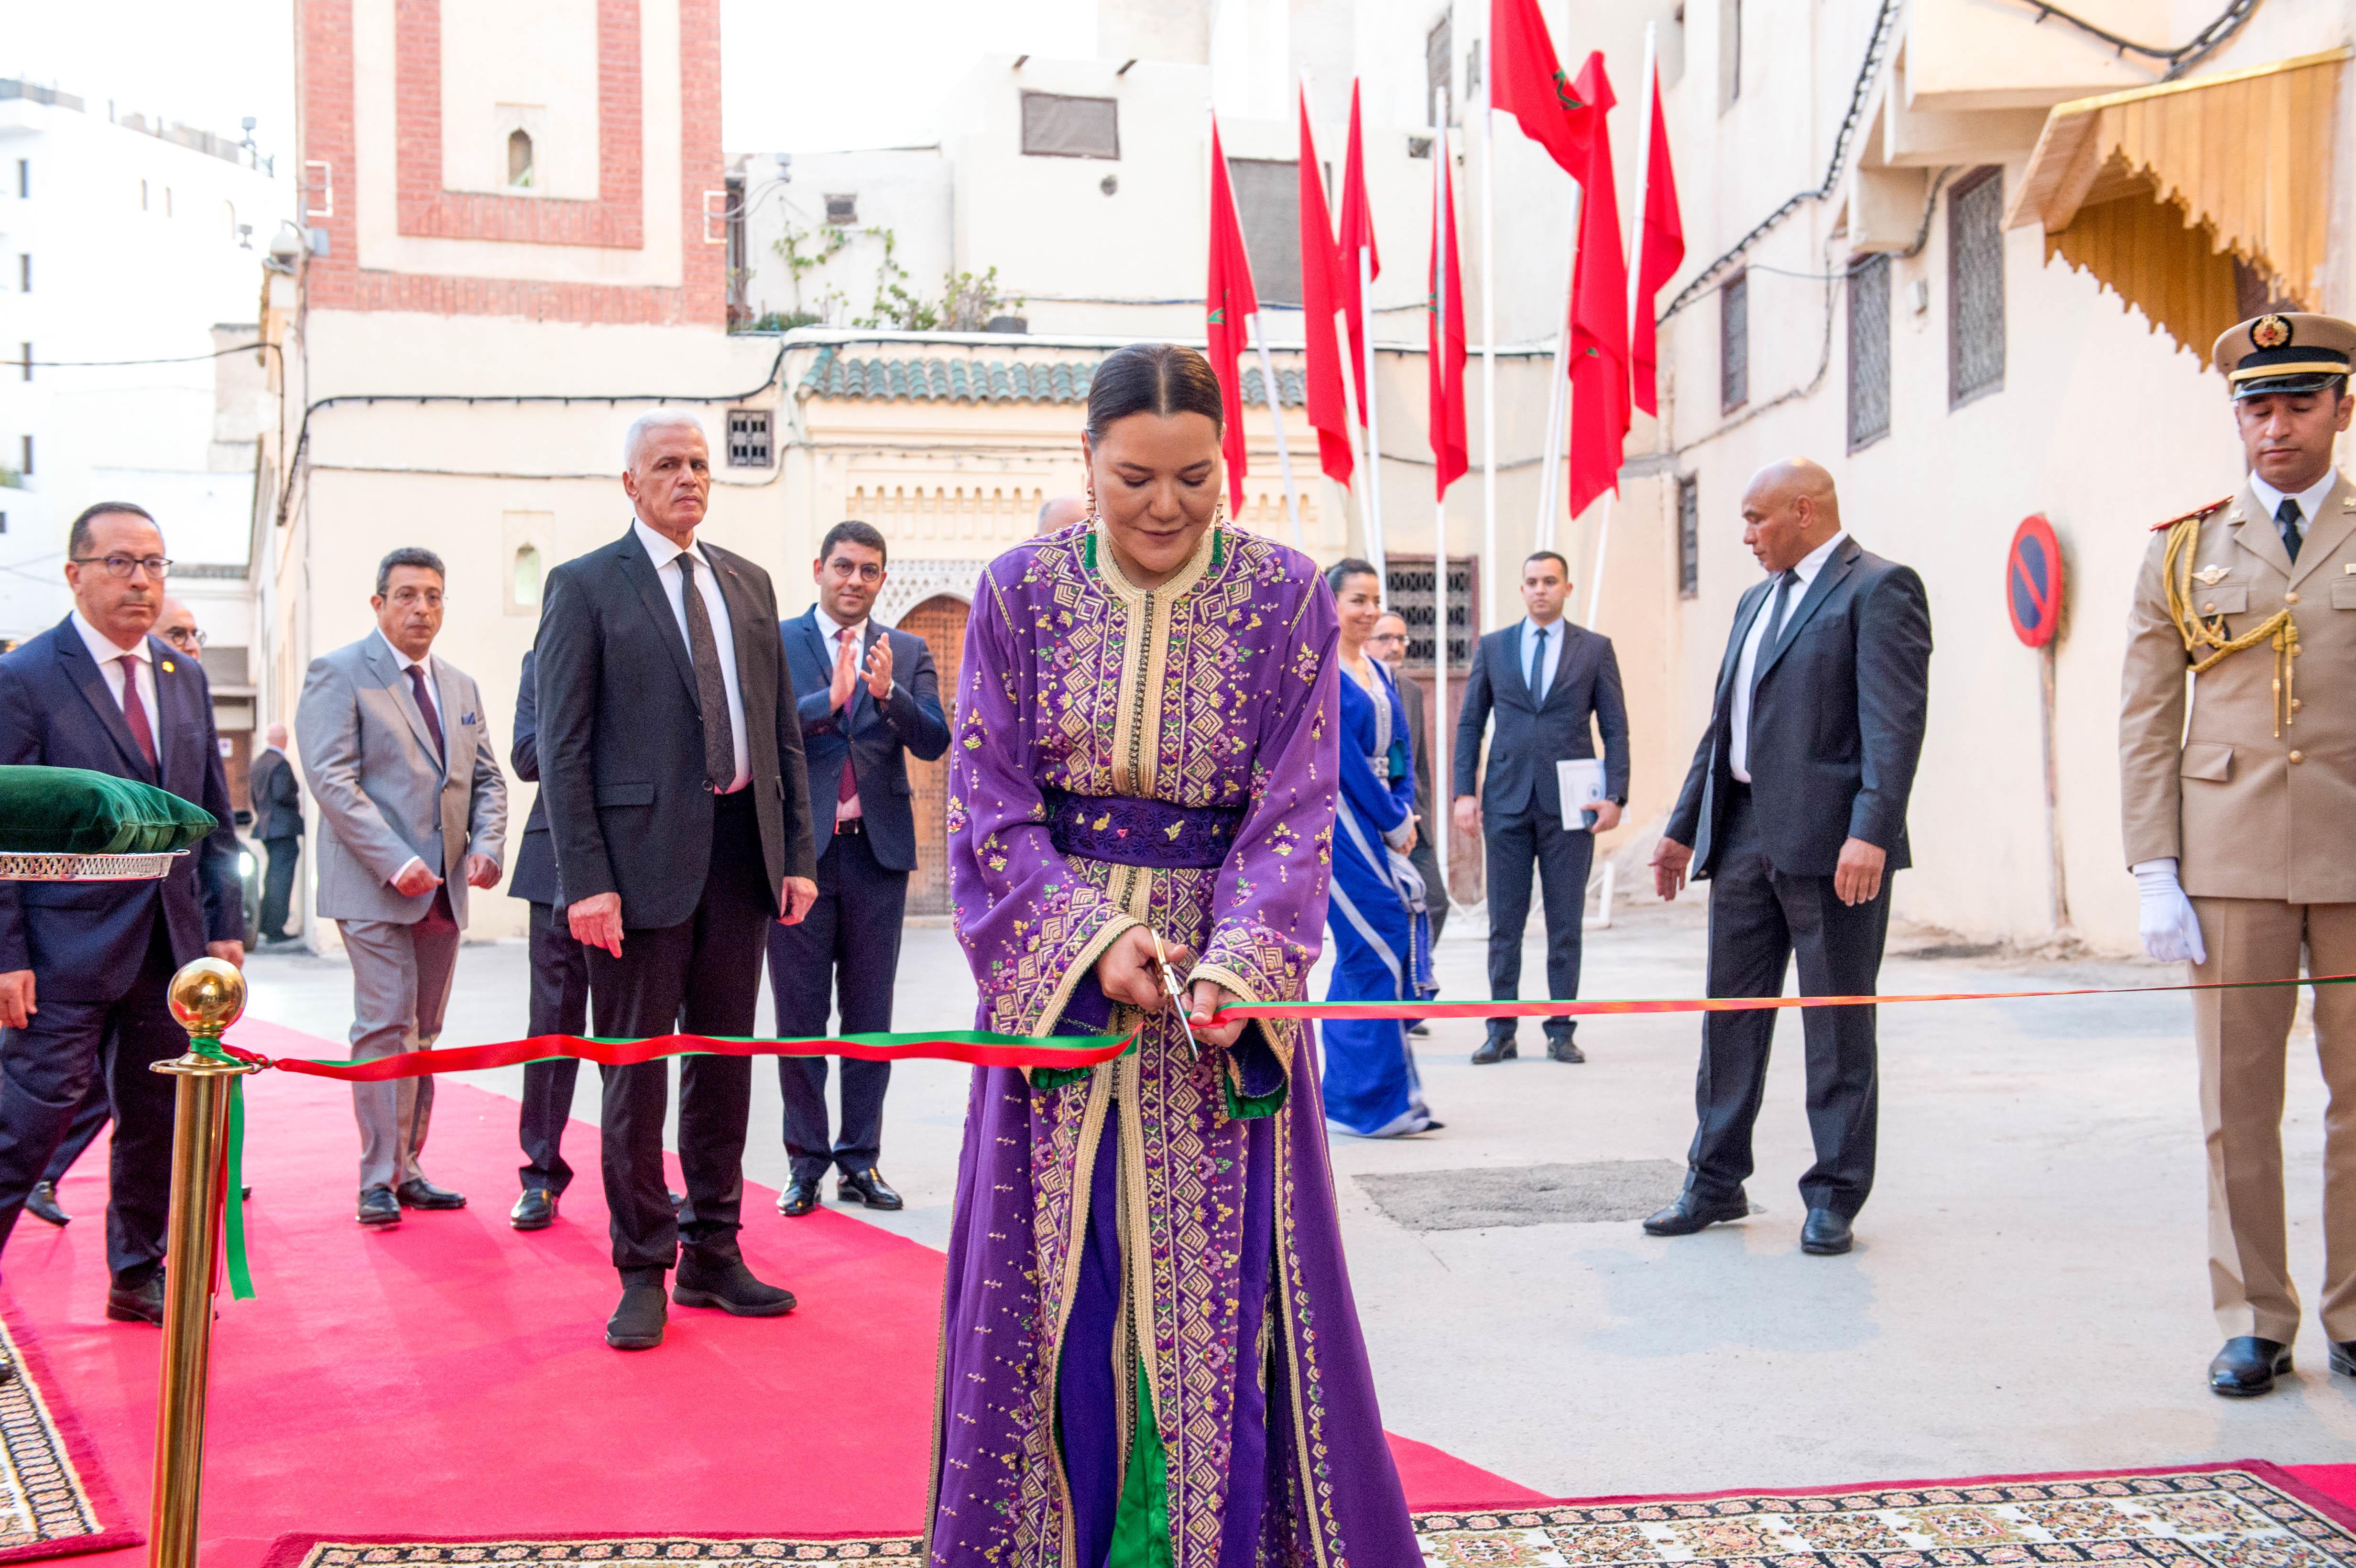 La Princesse Lalla Hasnaa inaugure "Dar Tazi"